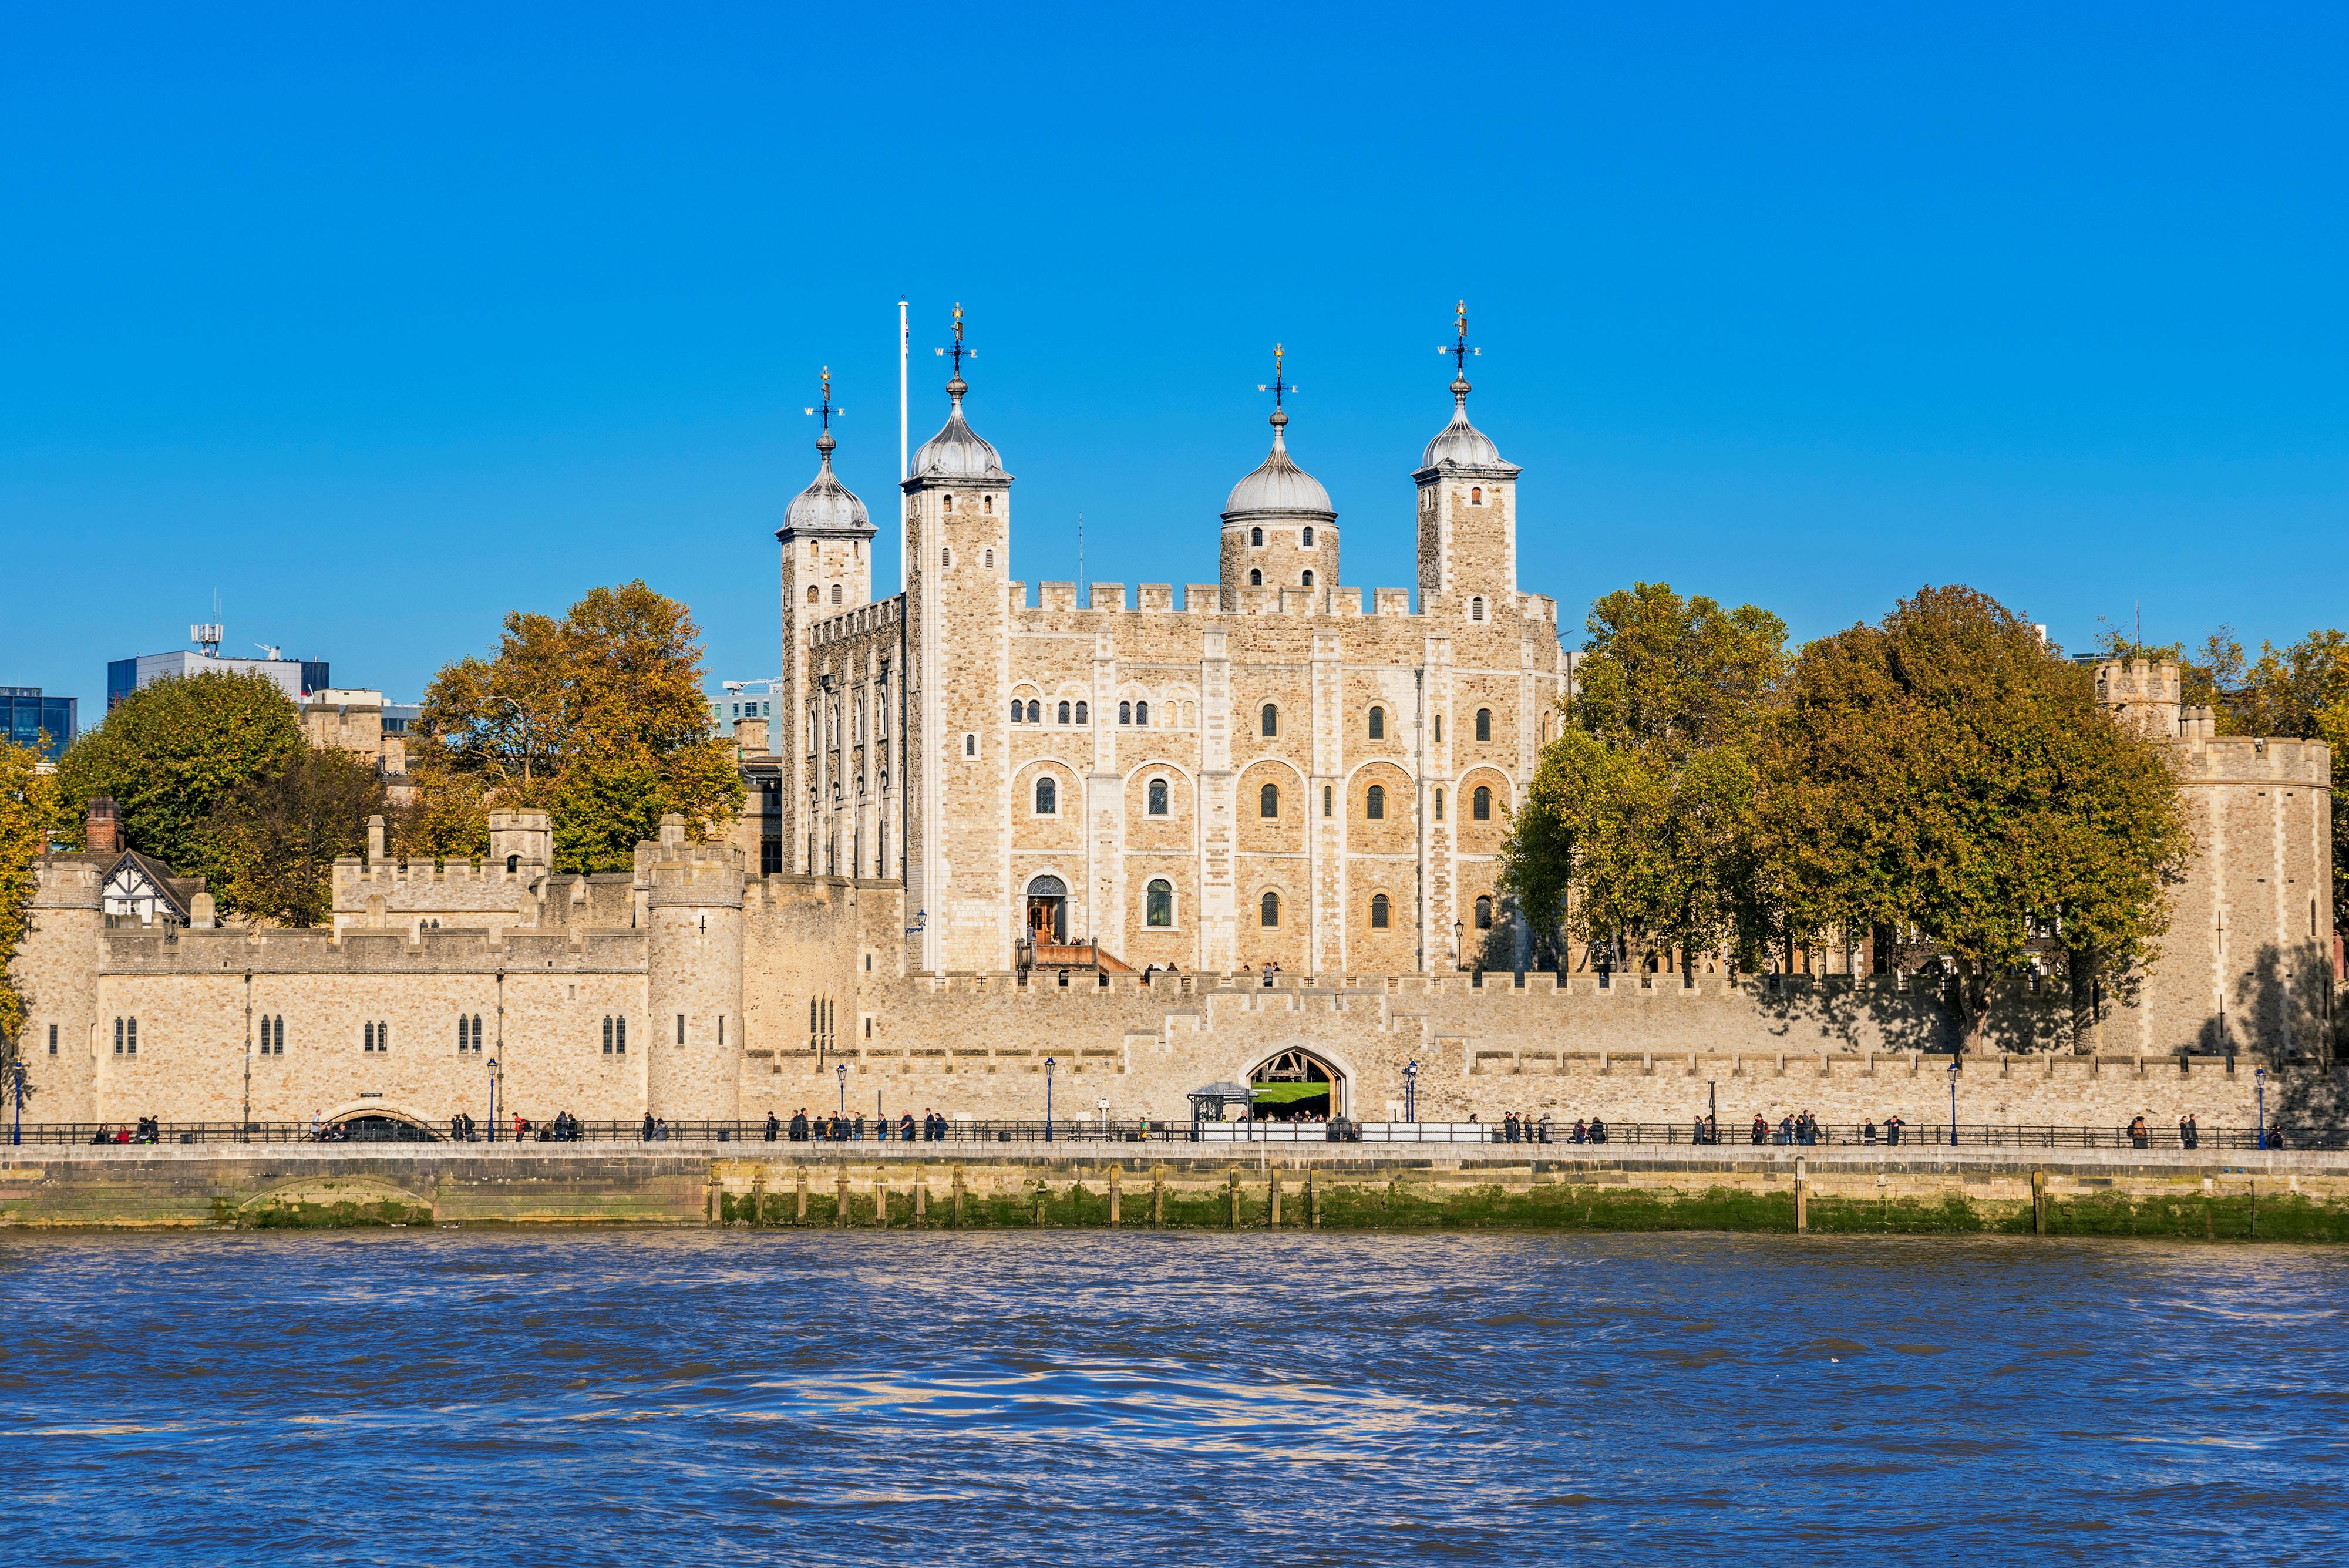 Visita guiada pelo melhor da Londres imperial com Torre de Londres e Westminster